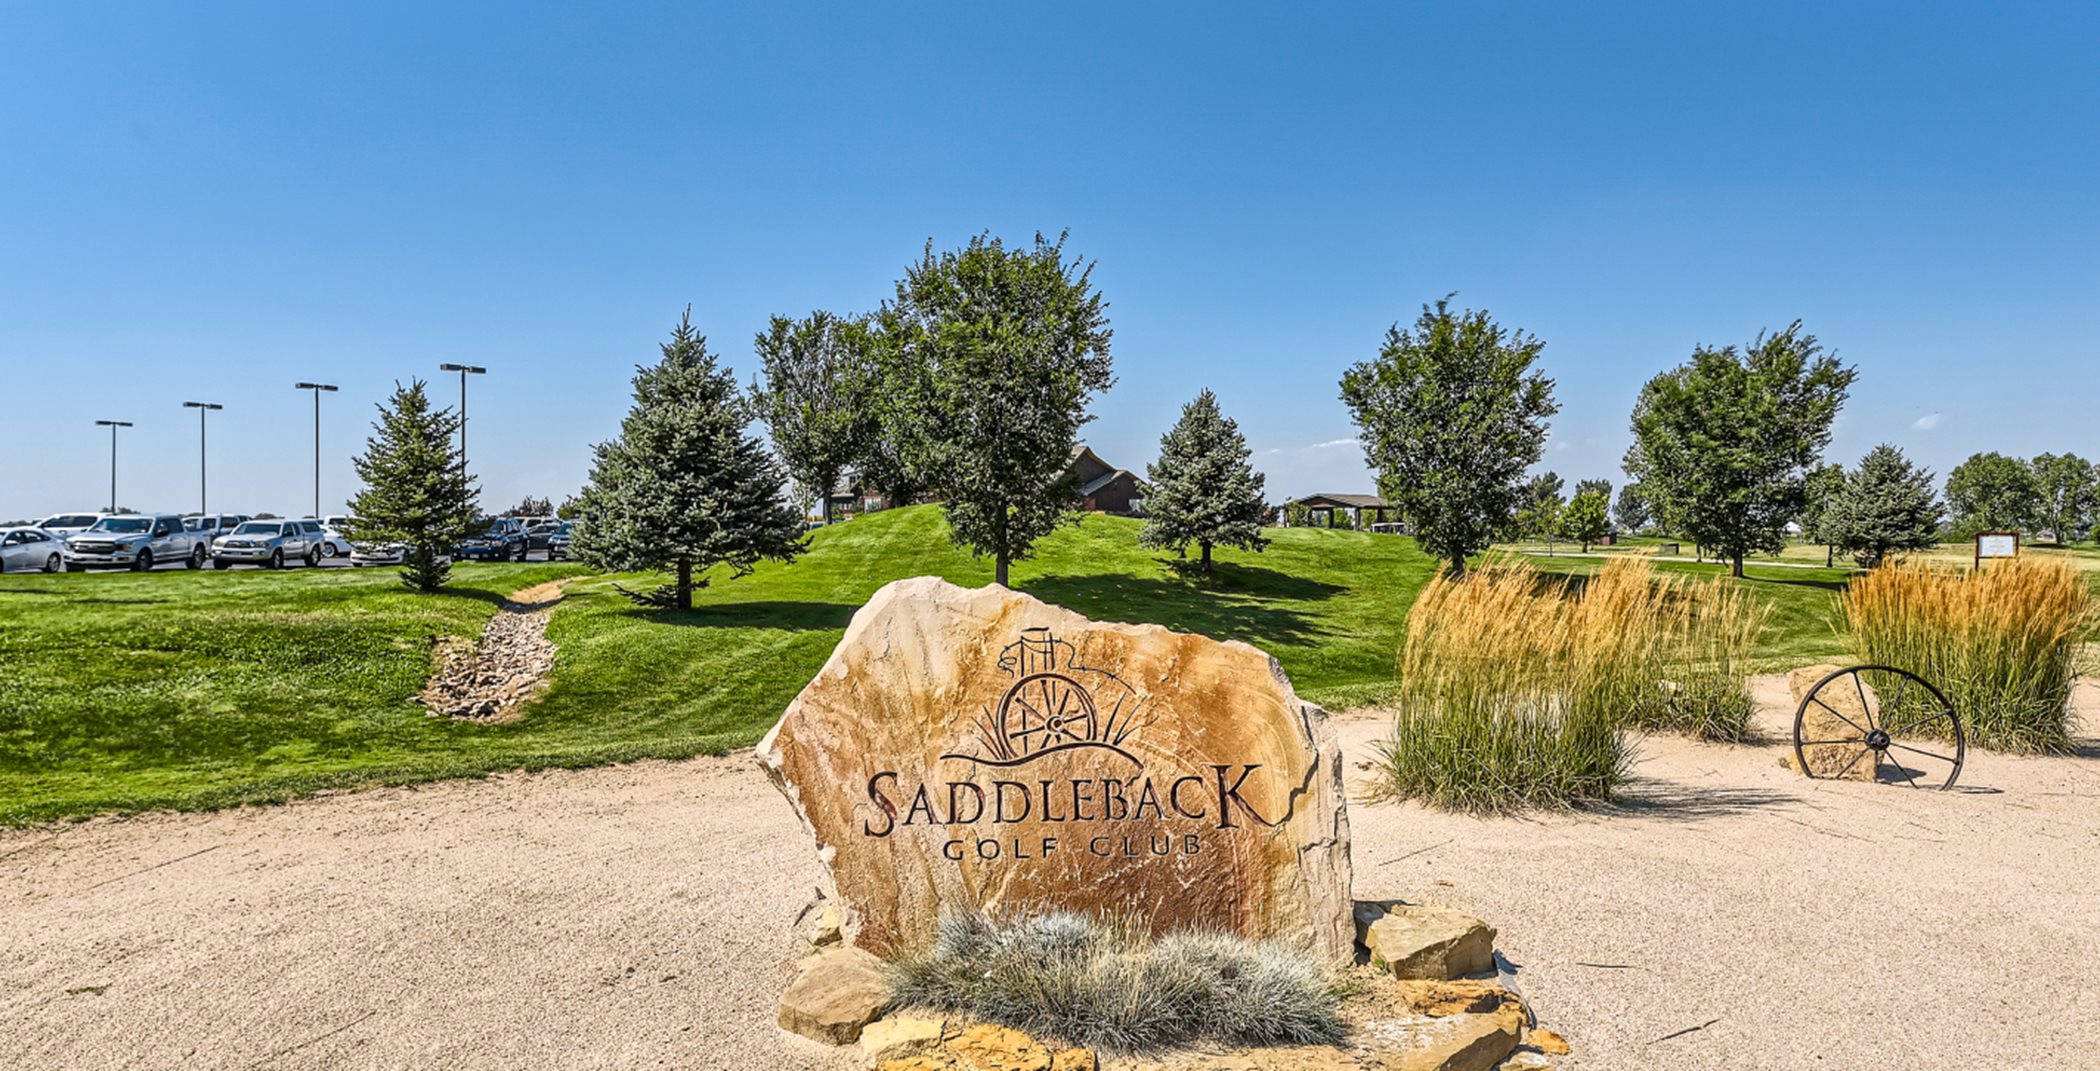 Saddleback Golf Course entrance